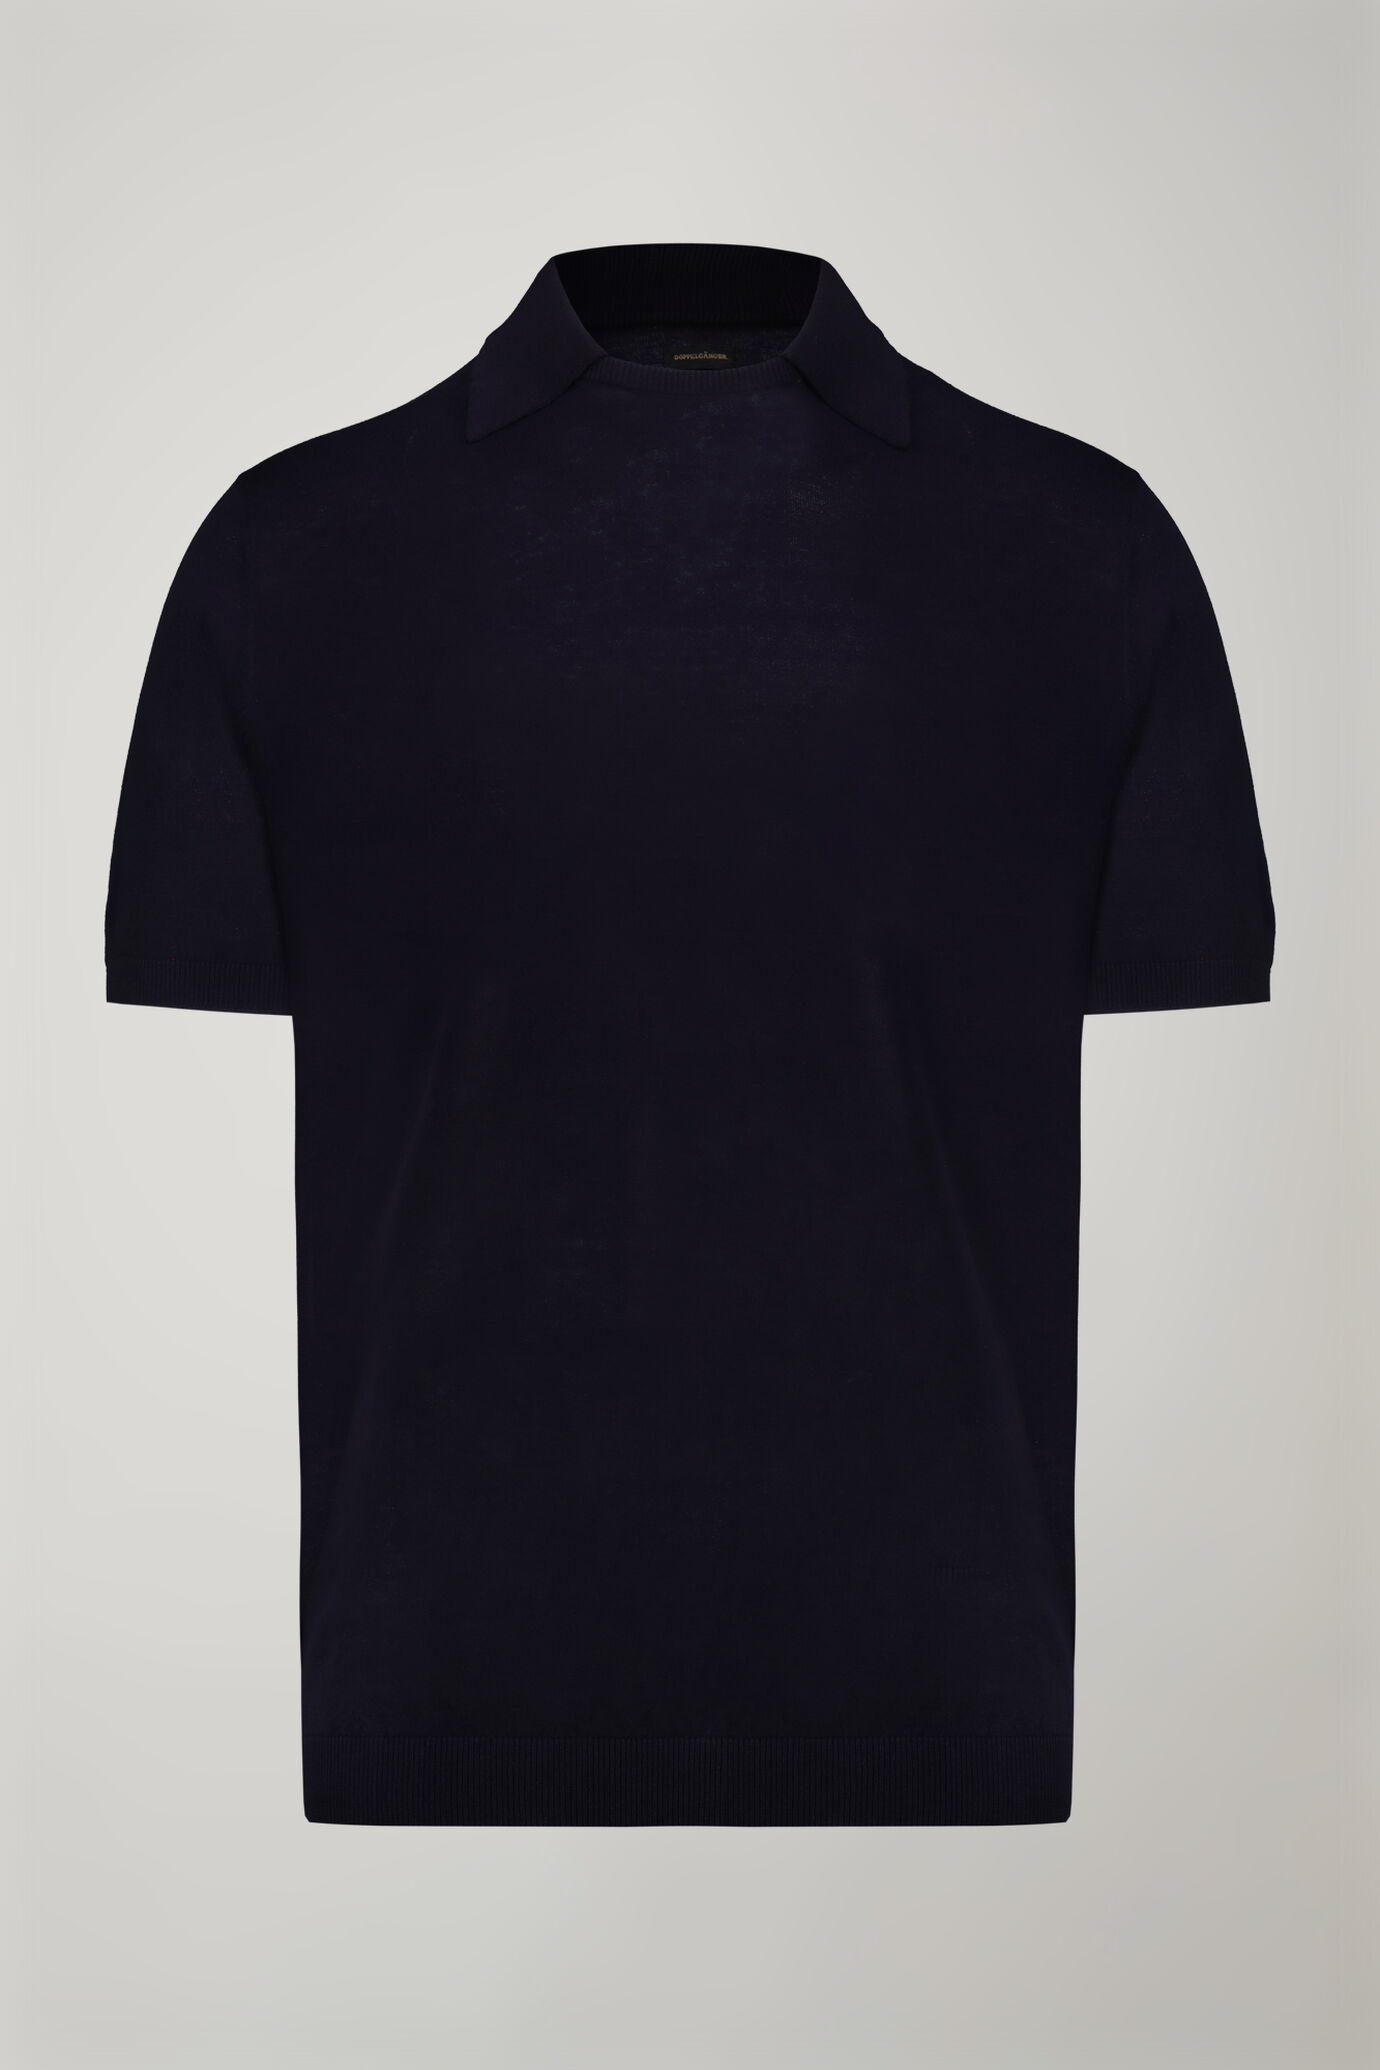 Herren-Poloshirt mit Rundhalsausschnitt und kurzen Ärmeln aus 100 % Baumwolle in normaler Passform image number 4